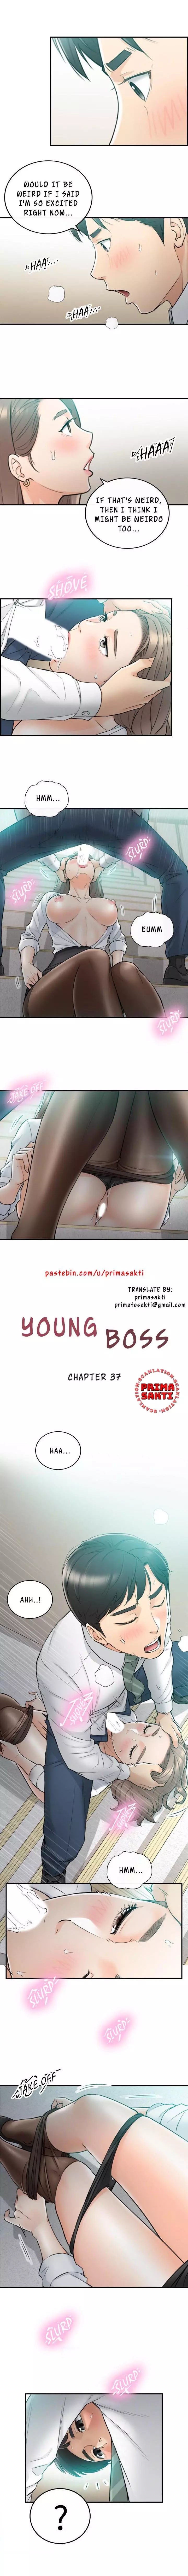 Young Boss Manhwa 01-73 293ページ